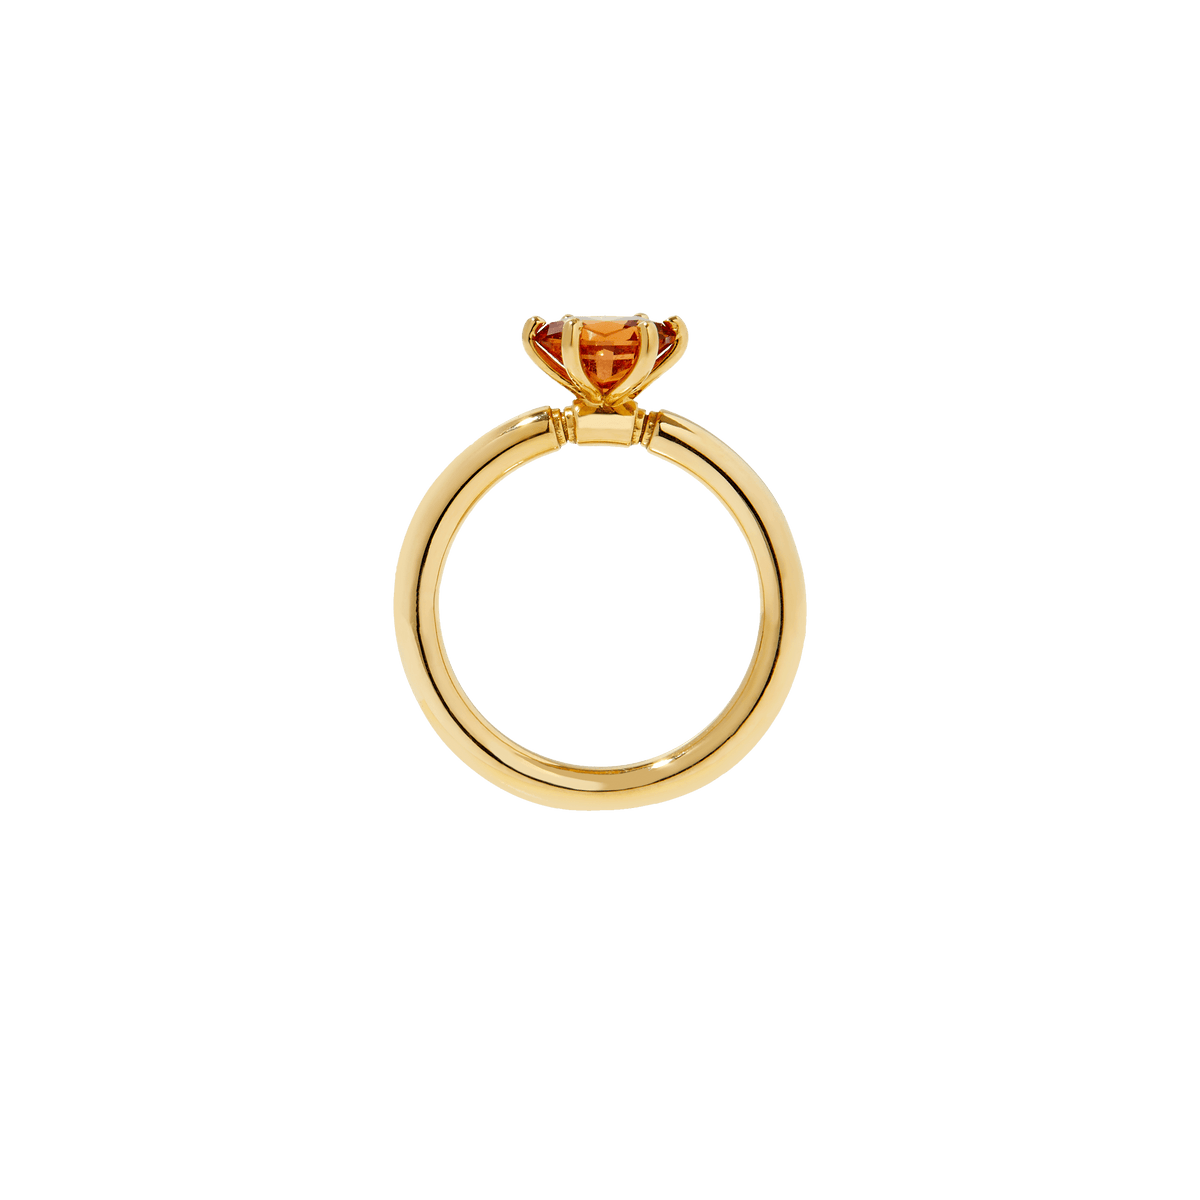 ethical orange Spessartine Garnet ring